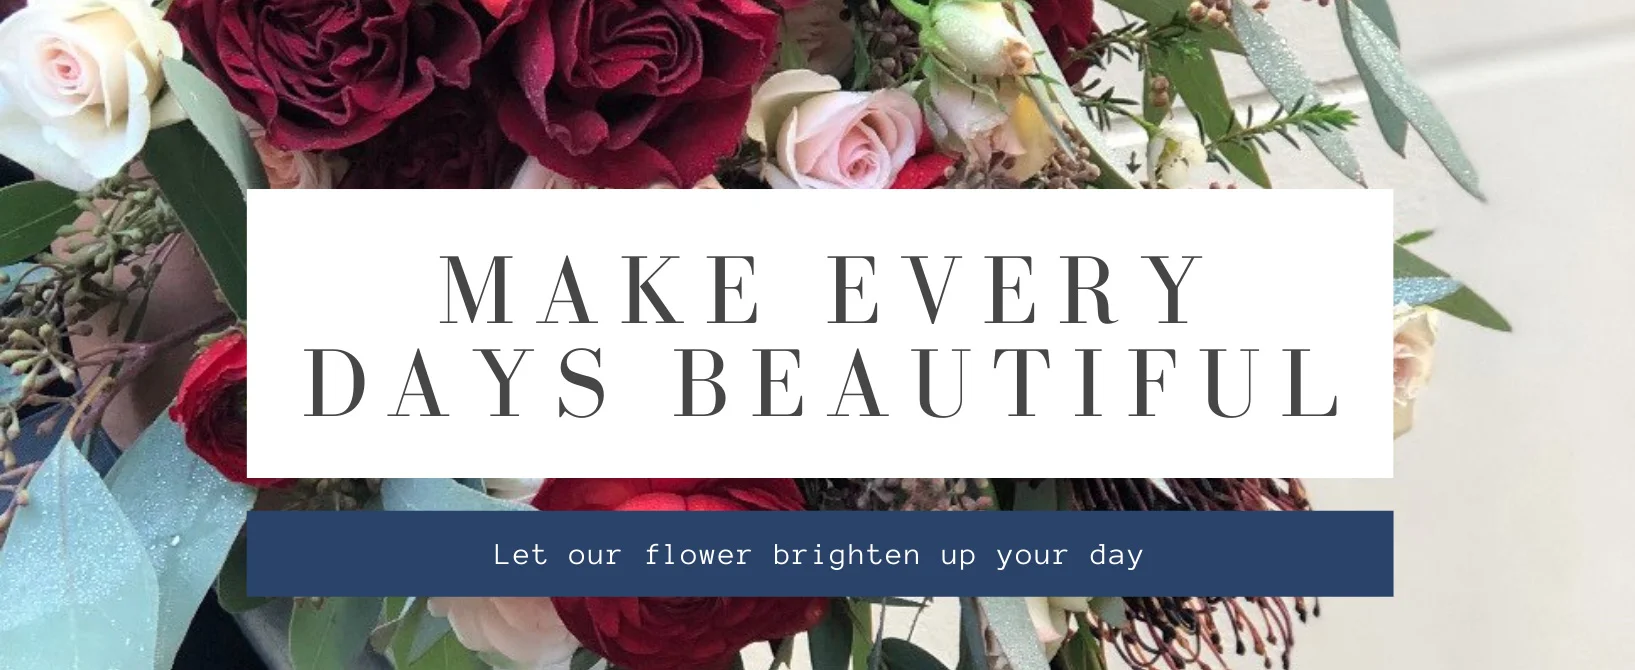 Make every days beautiful